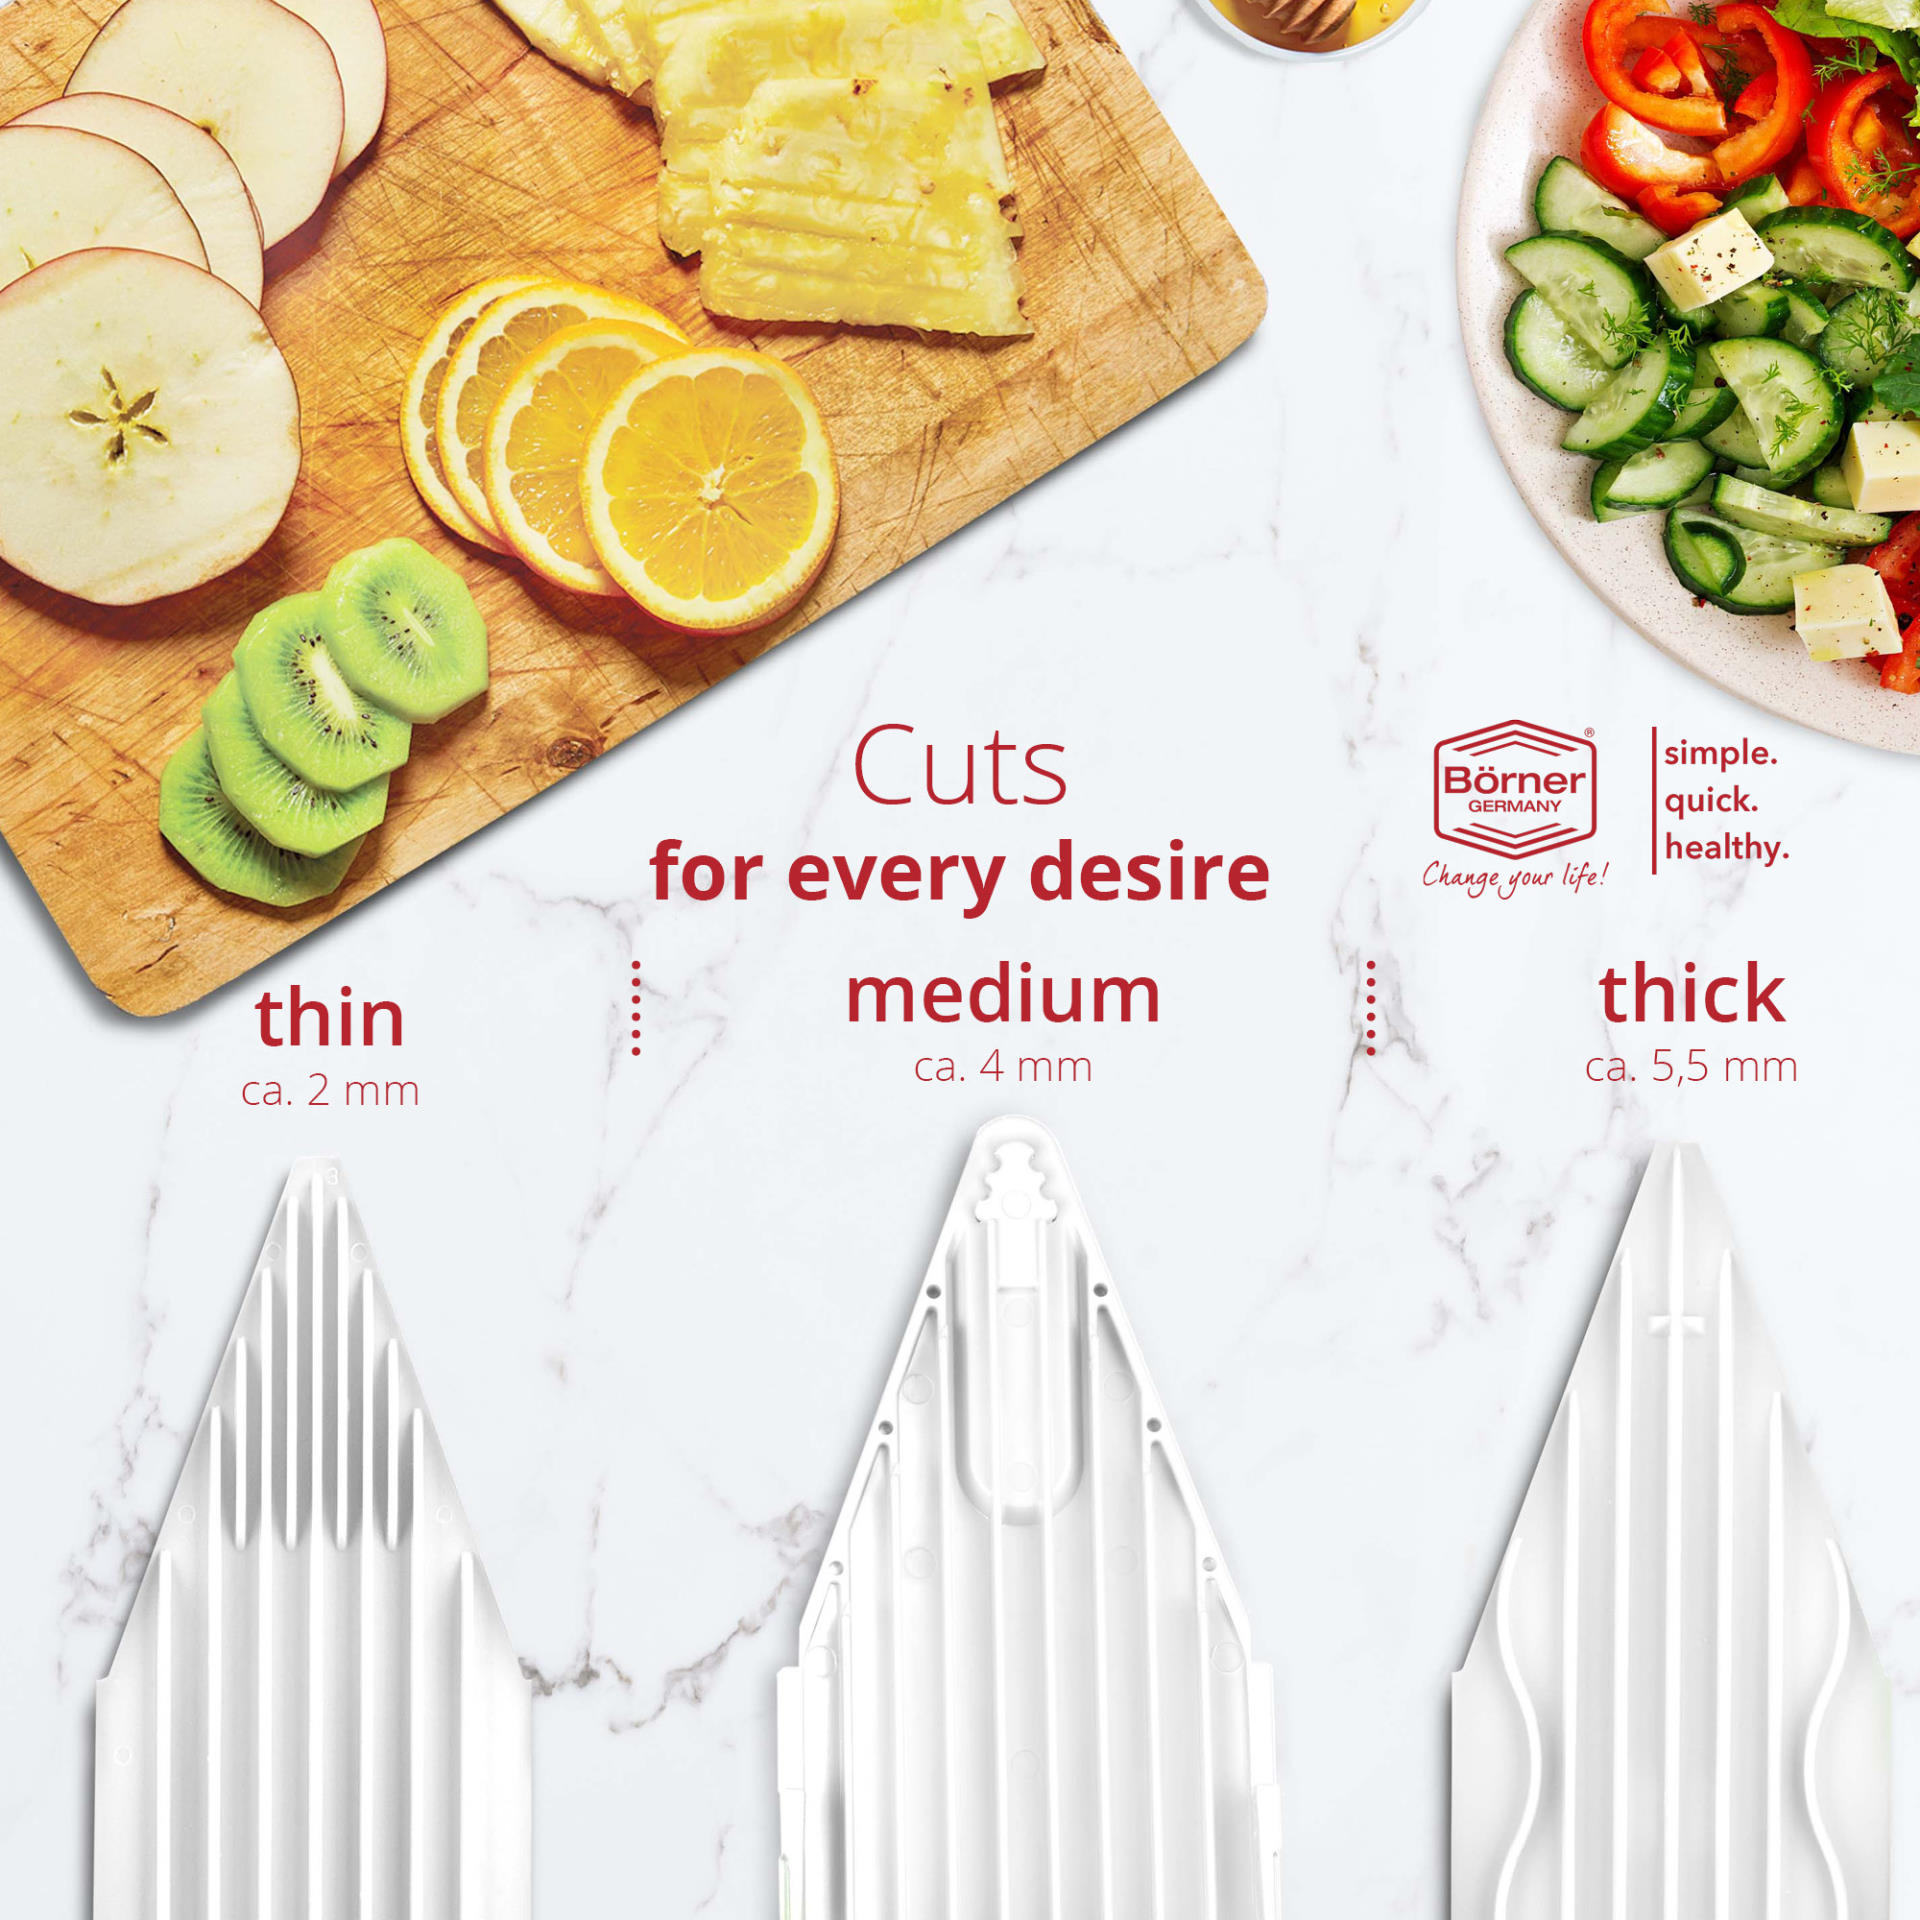 Кухненско ренде Бьорнер Slicer V3 TrendLine основен комплект - Бял